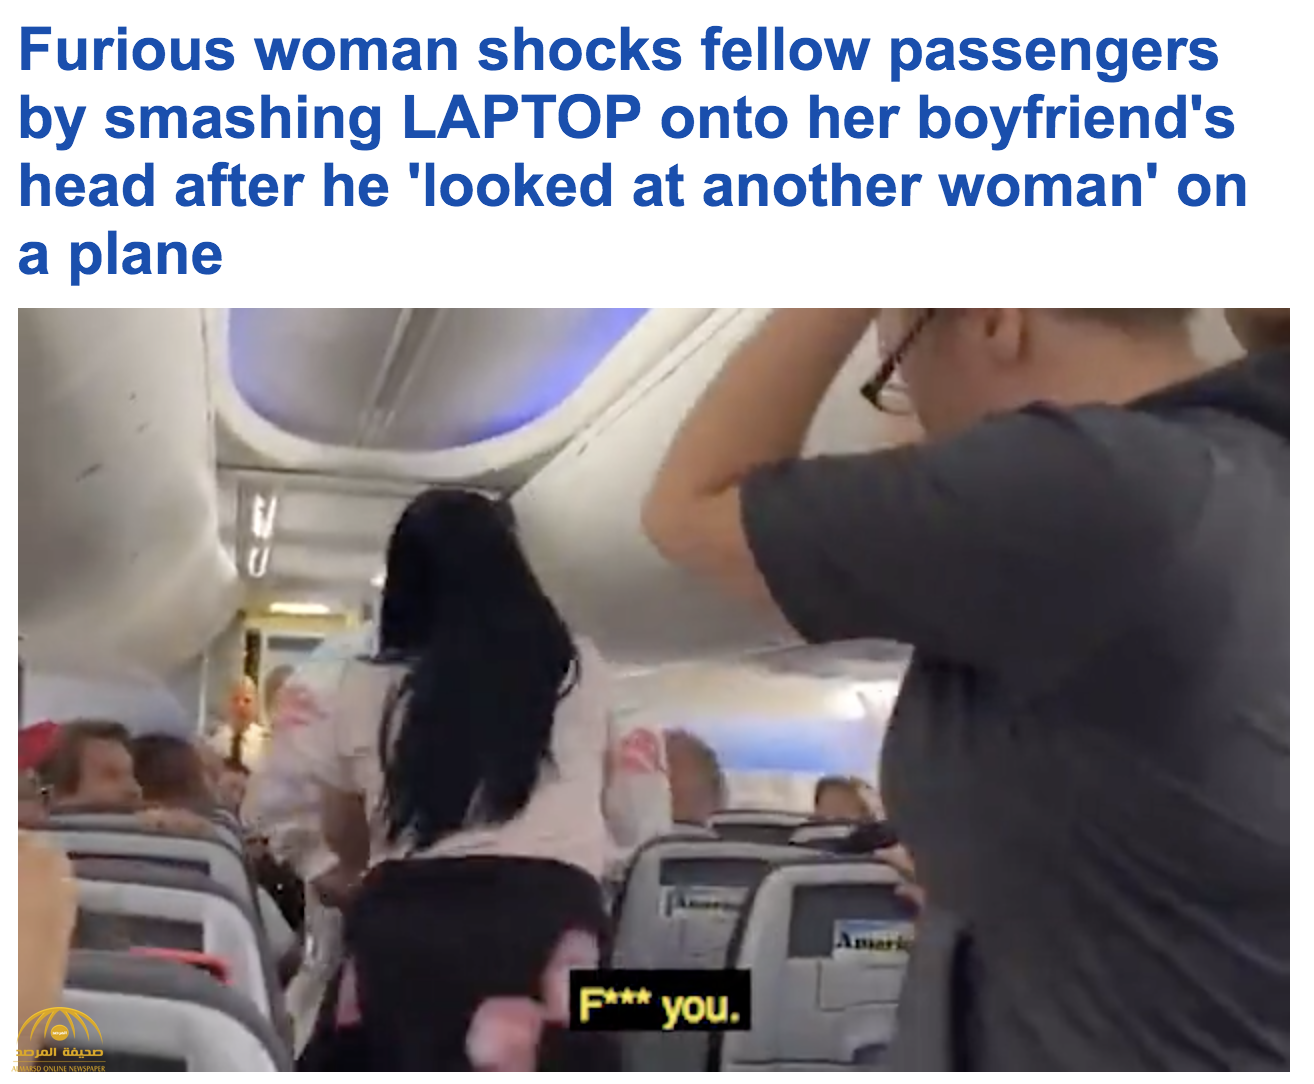 شاهد: امرأة غاضبة تحطم جهاز "لابتوب" على رأس صديقها داخل طائرة أمريكية لأنه نظر إلى فتاة اخرى !